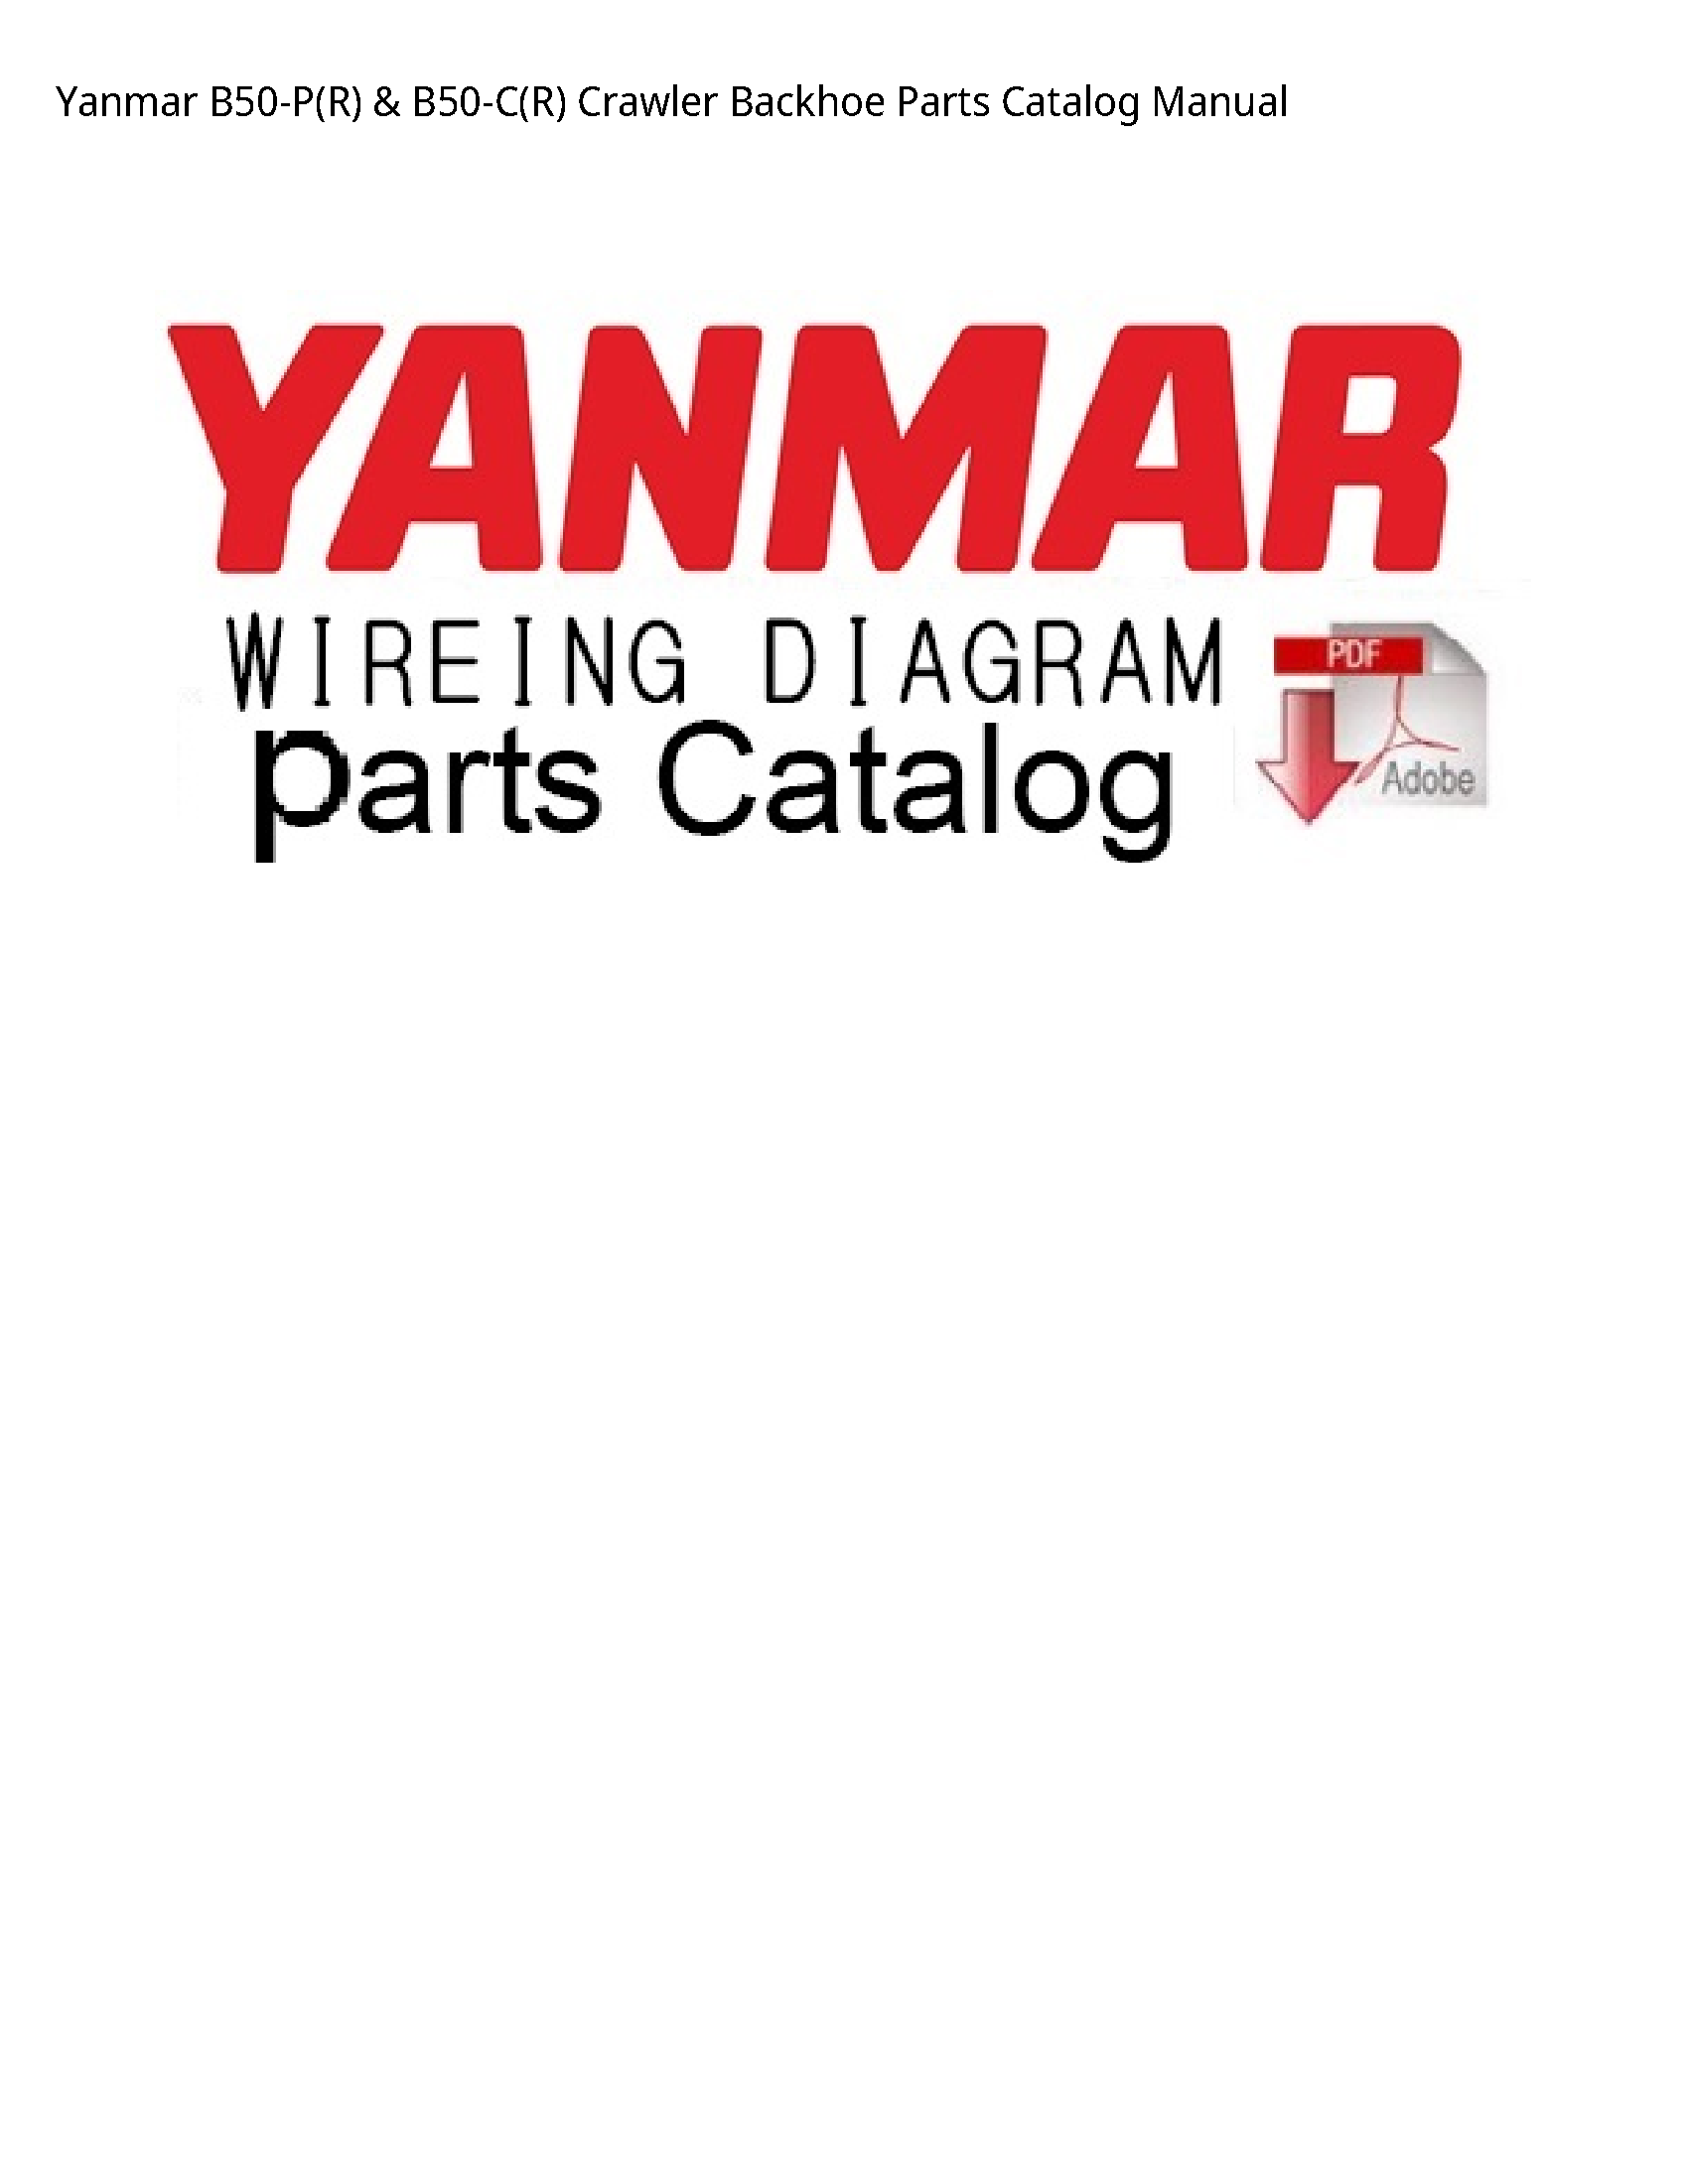 Yanmar B50-P(R) Crawler Backhoe Parts Catalog manual